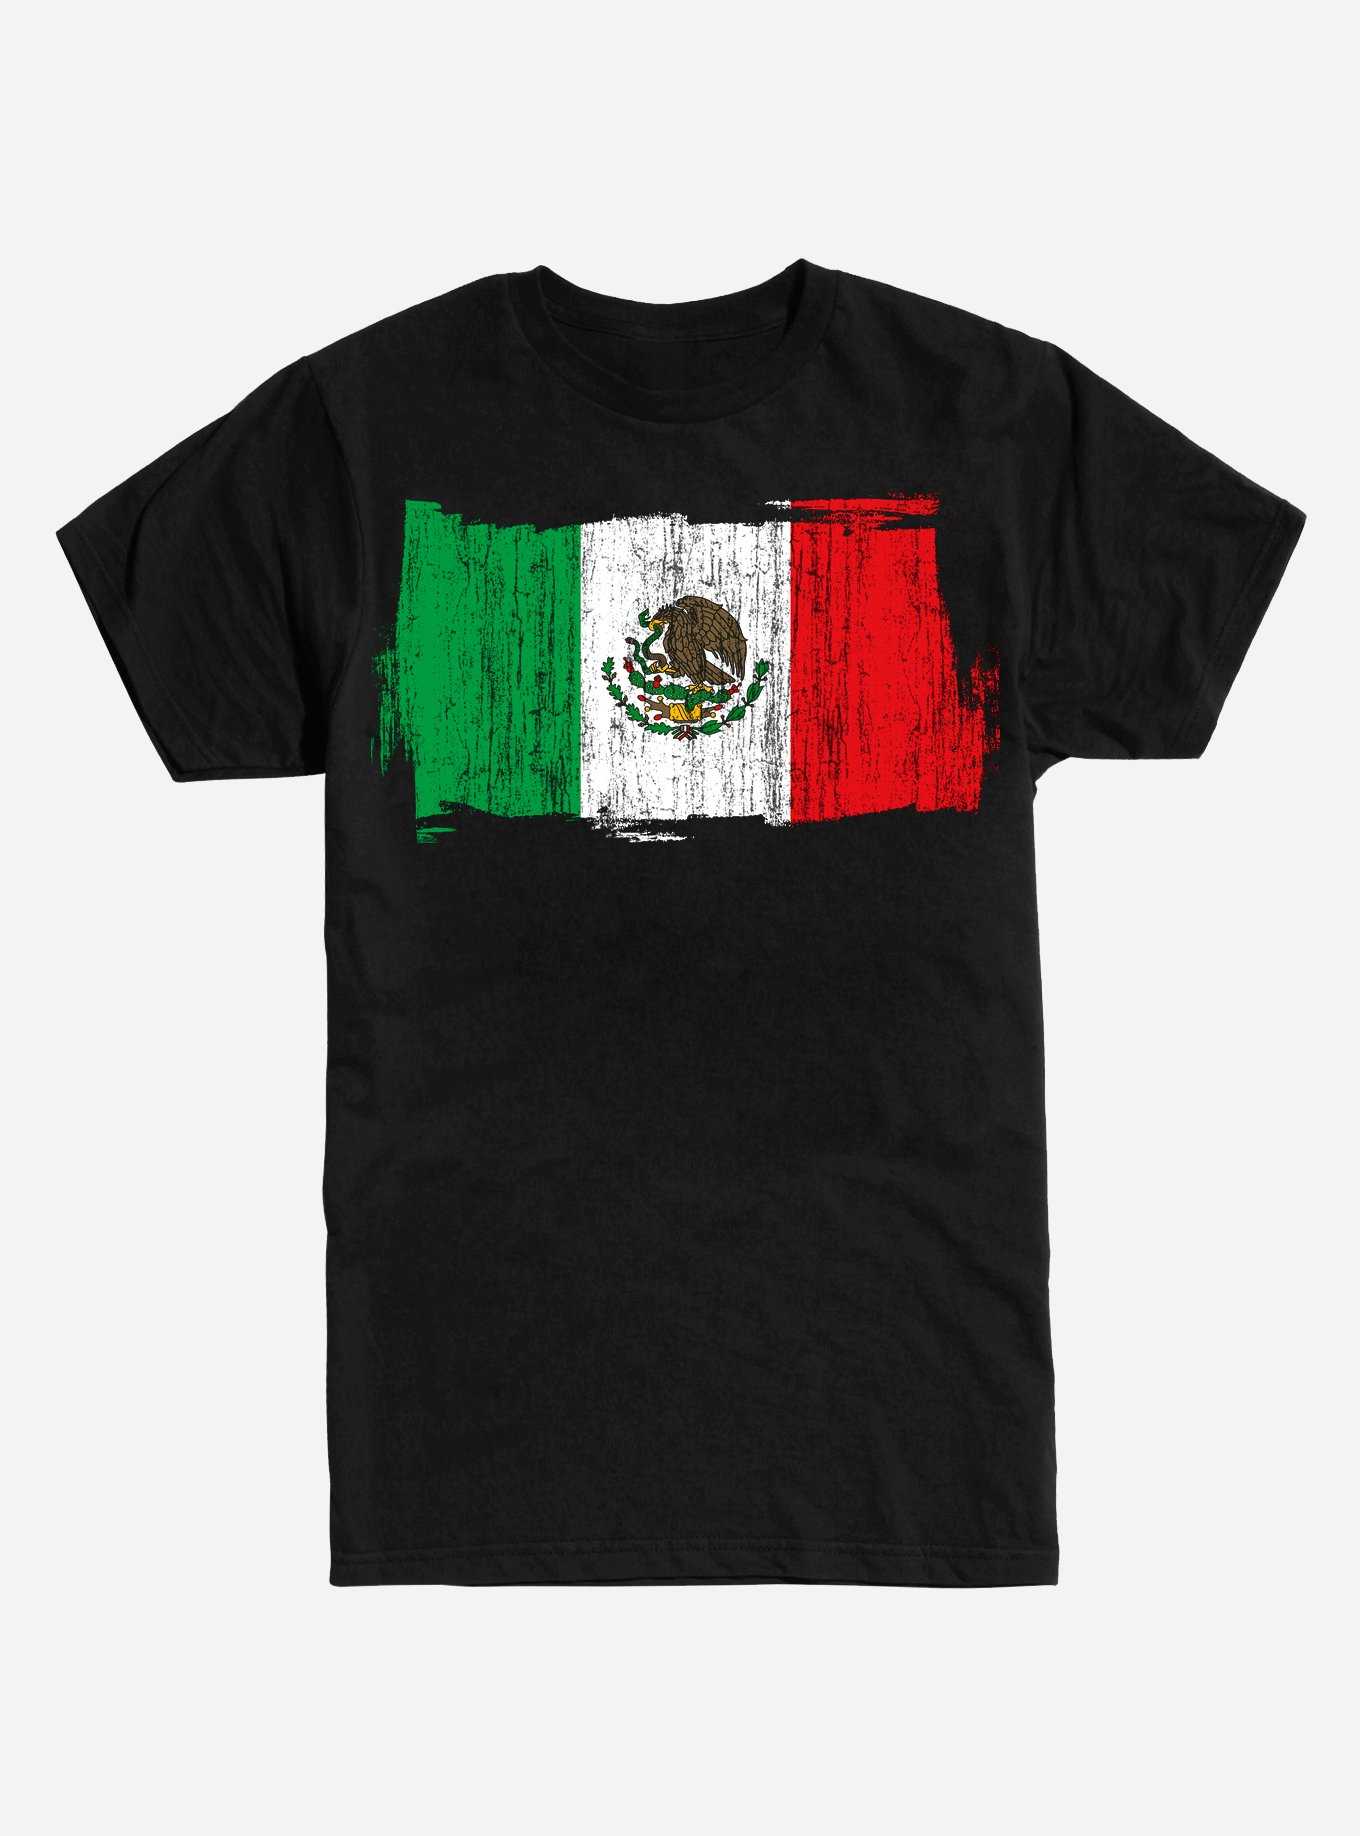 Flag of Mexico T-Shirt, , hi-res